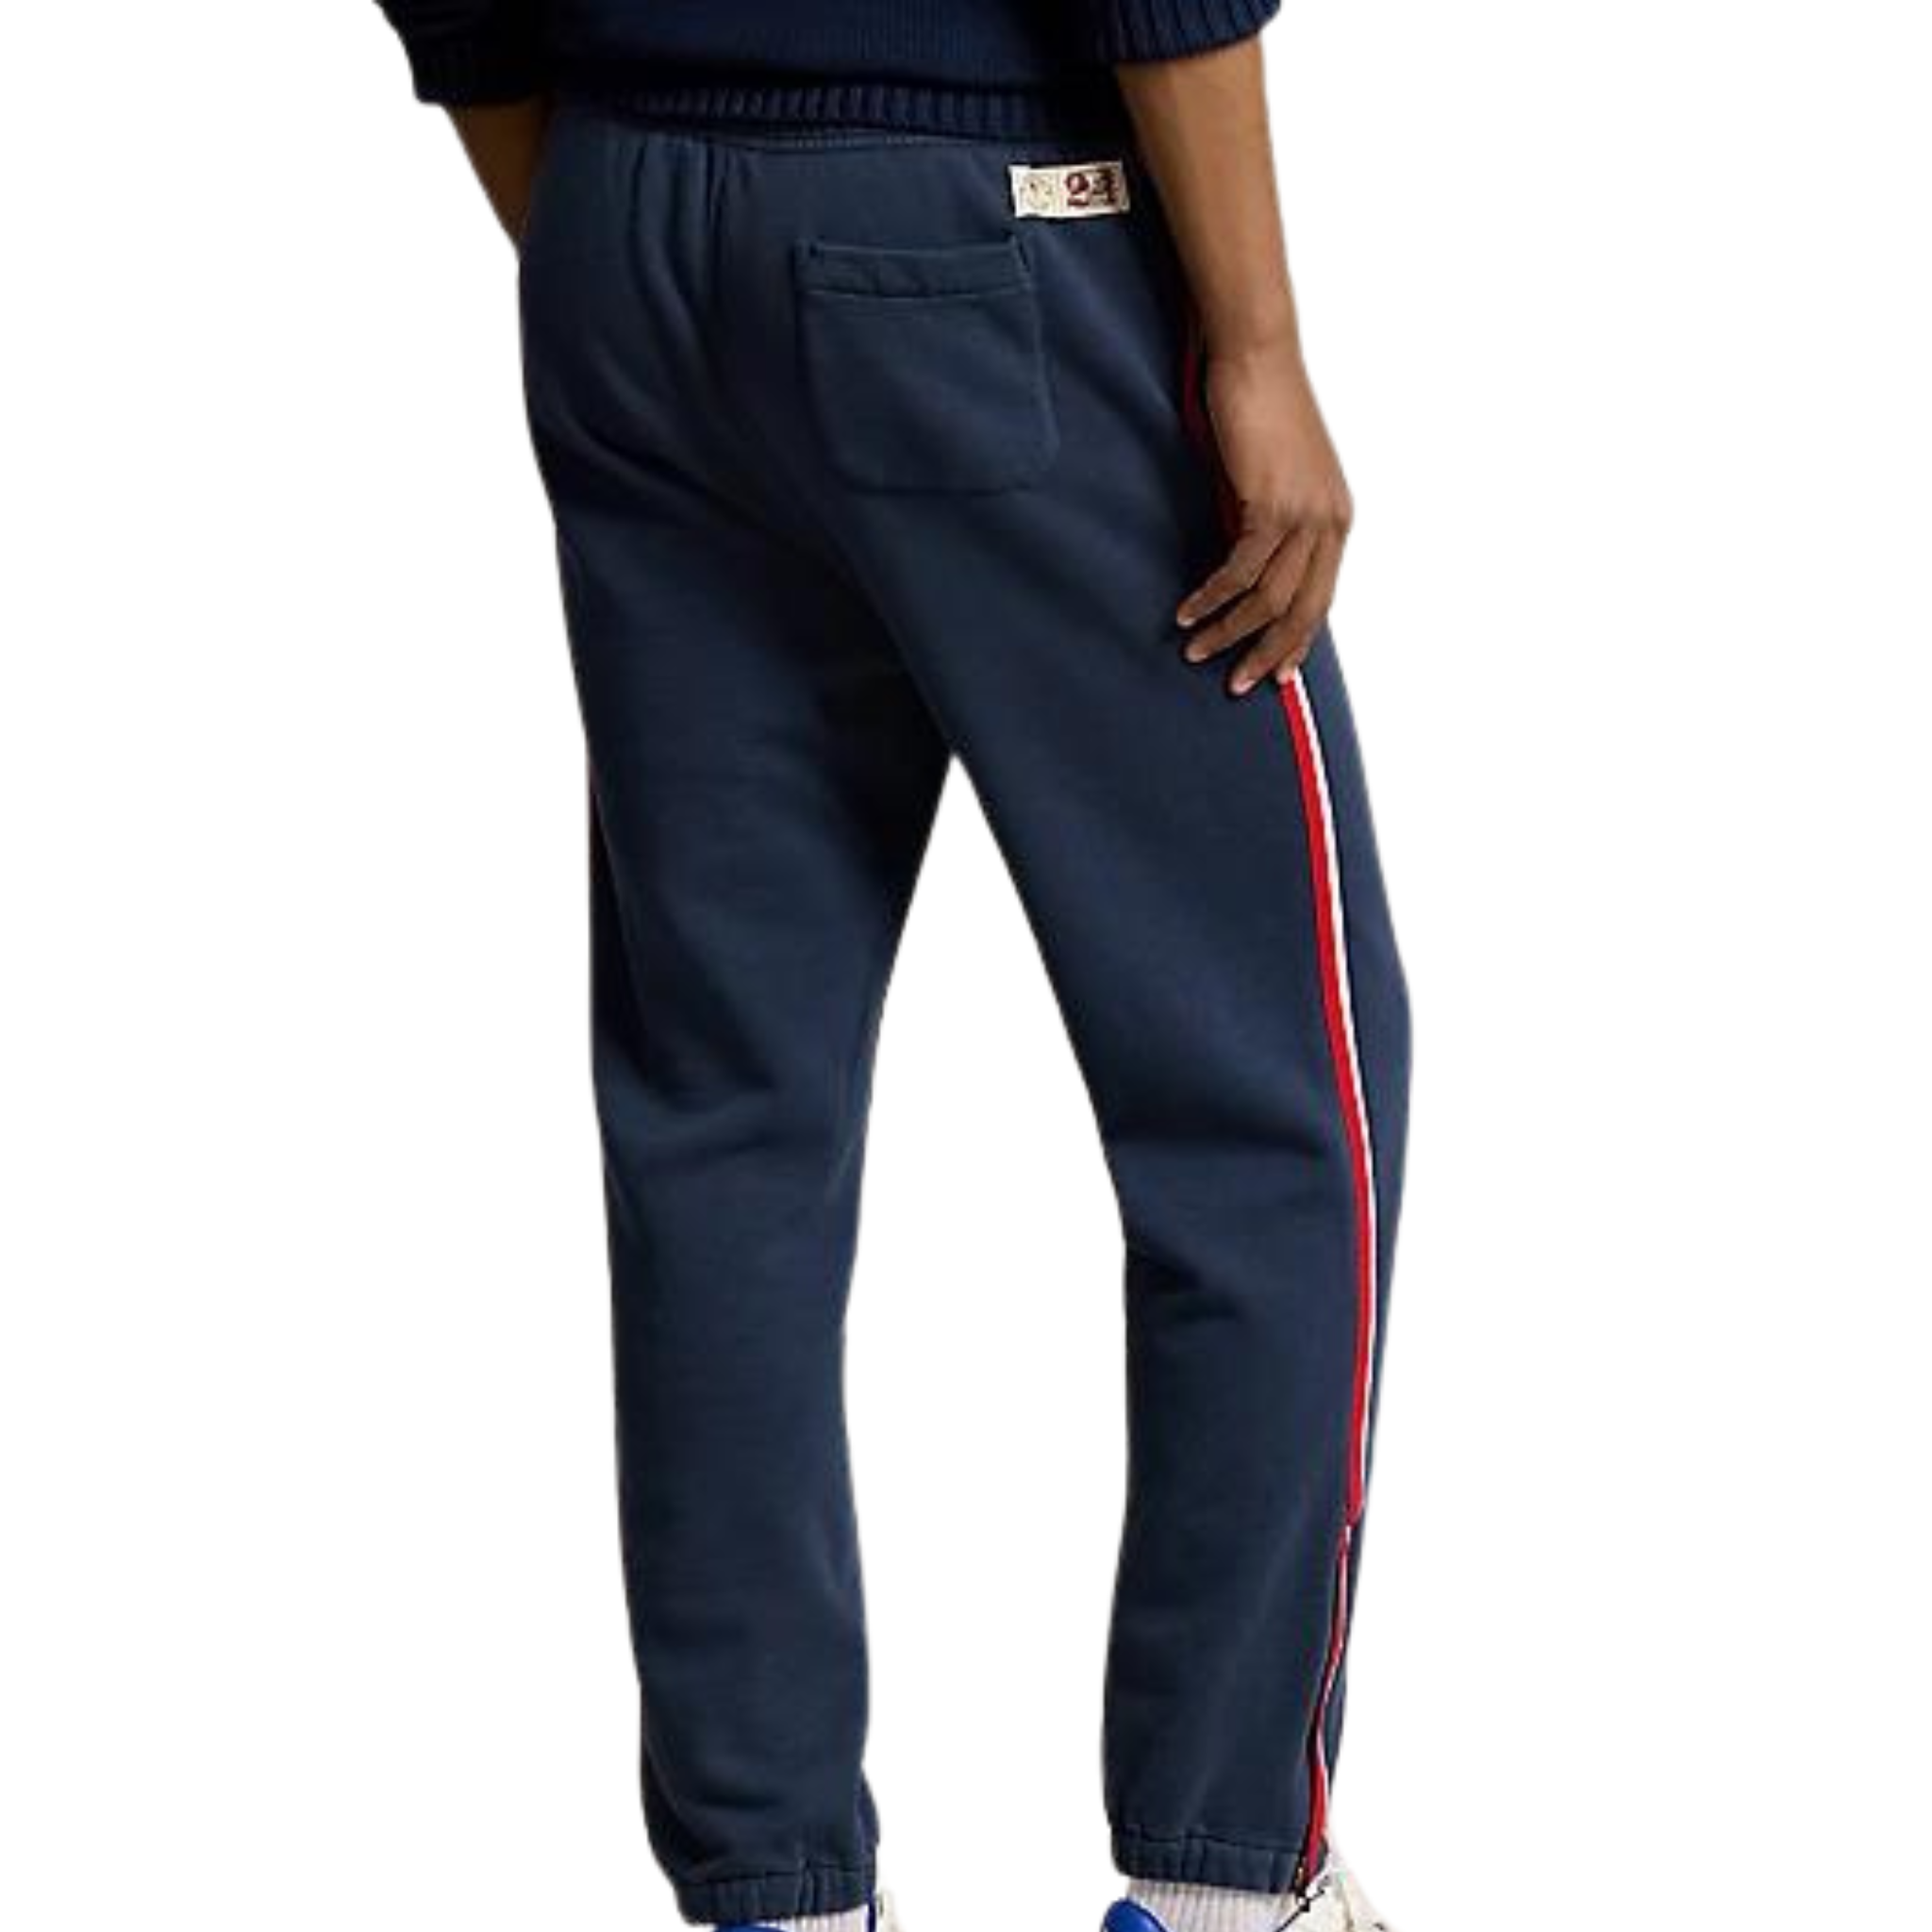 Polo Ralph Lauren Team USA Sweatpants (Navy) - Polo Ralph Lauren